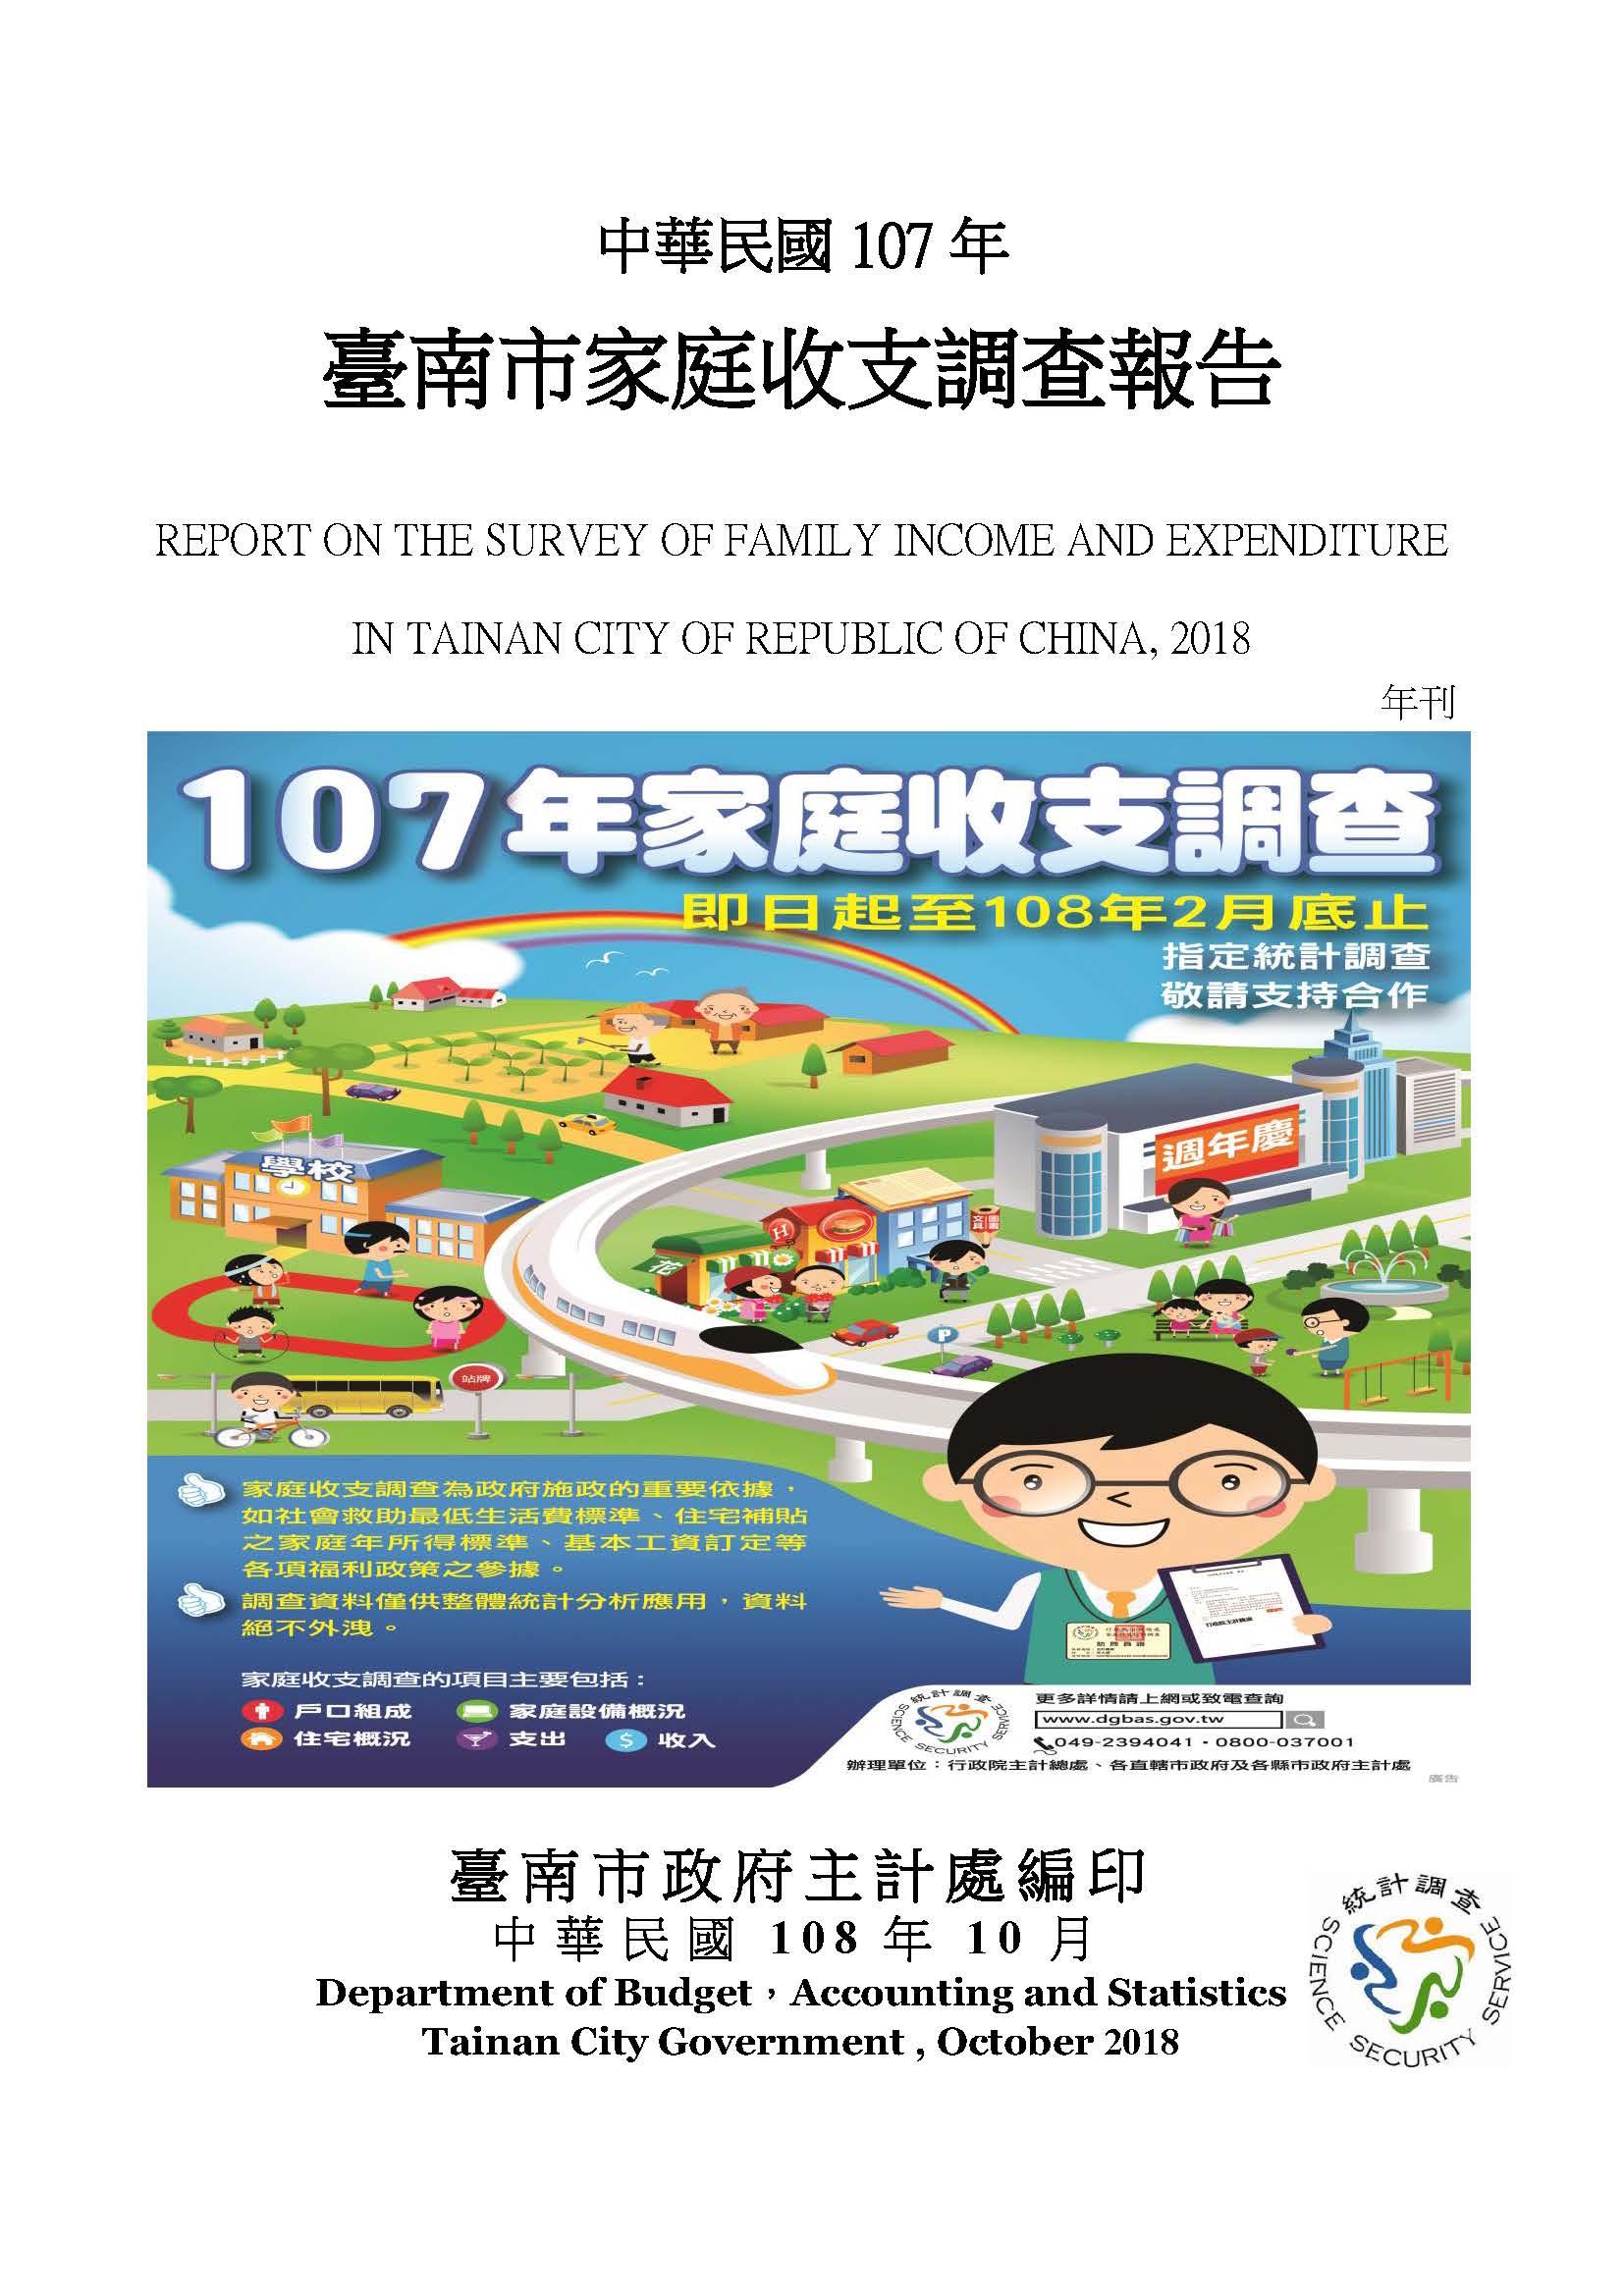 中華民國107年臺南市家庭收支調查報告 